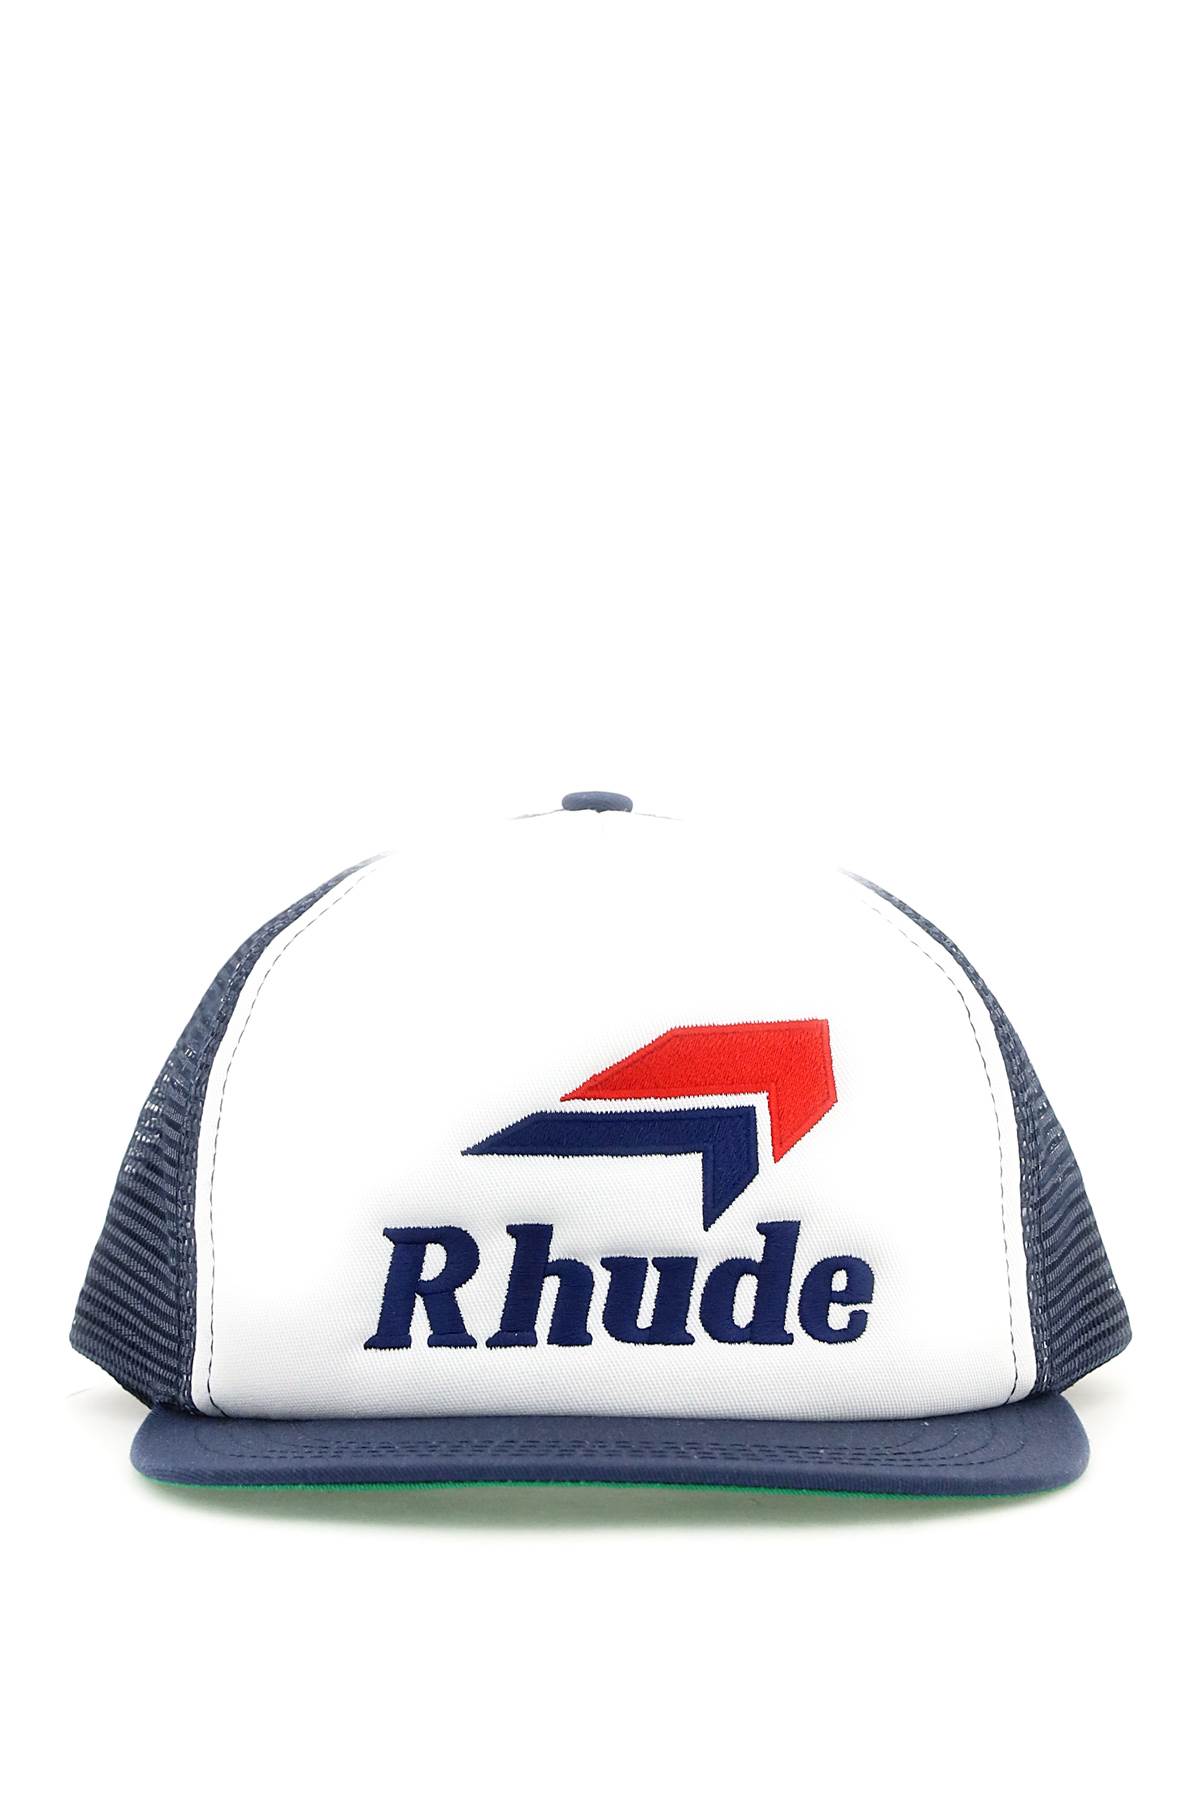 Rhude speedmark Trucker Hat